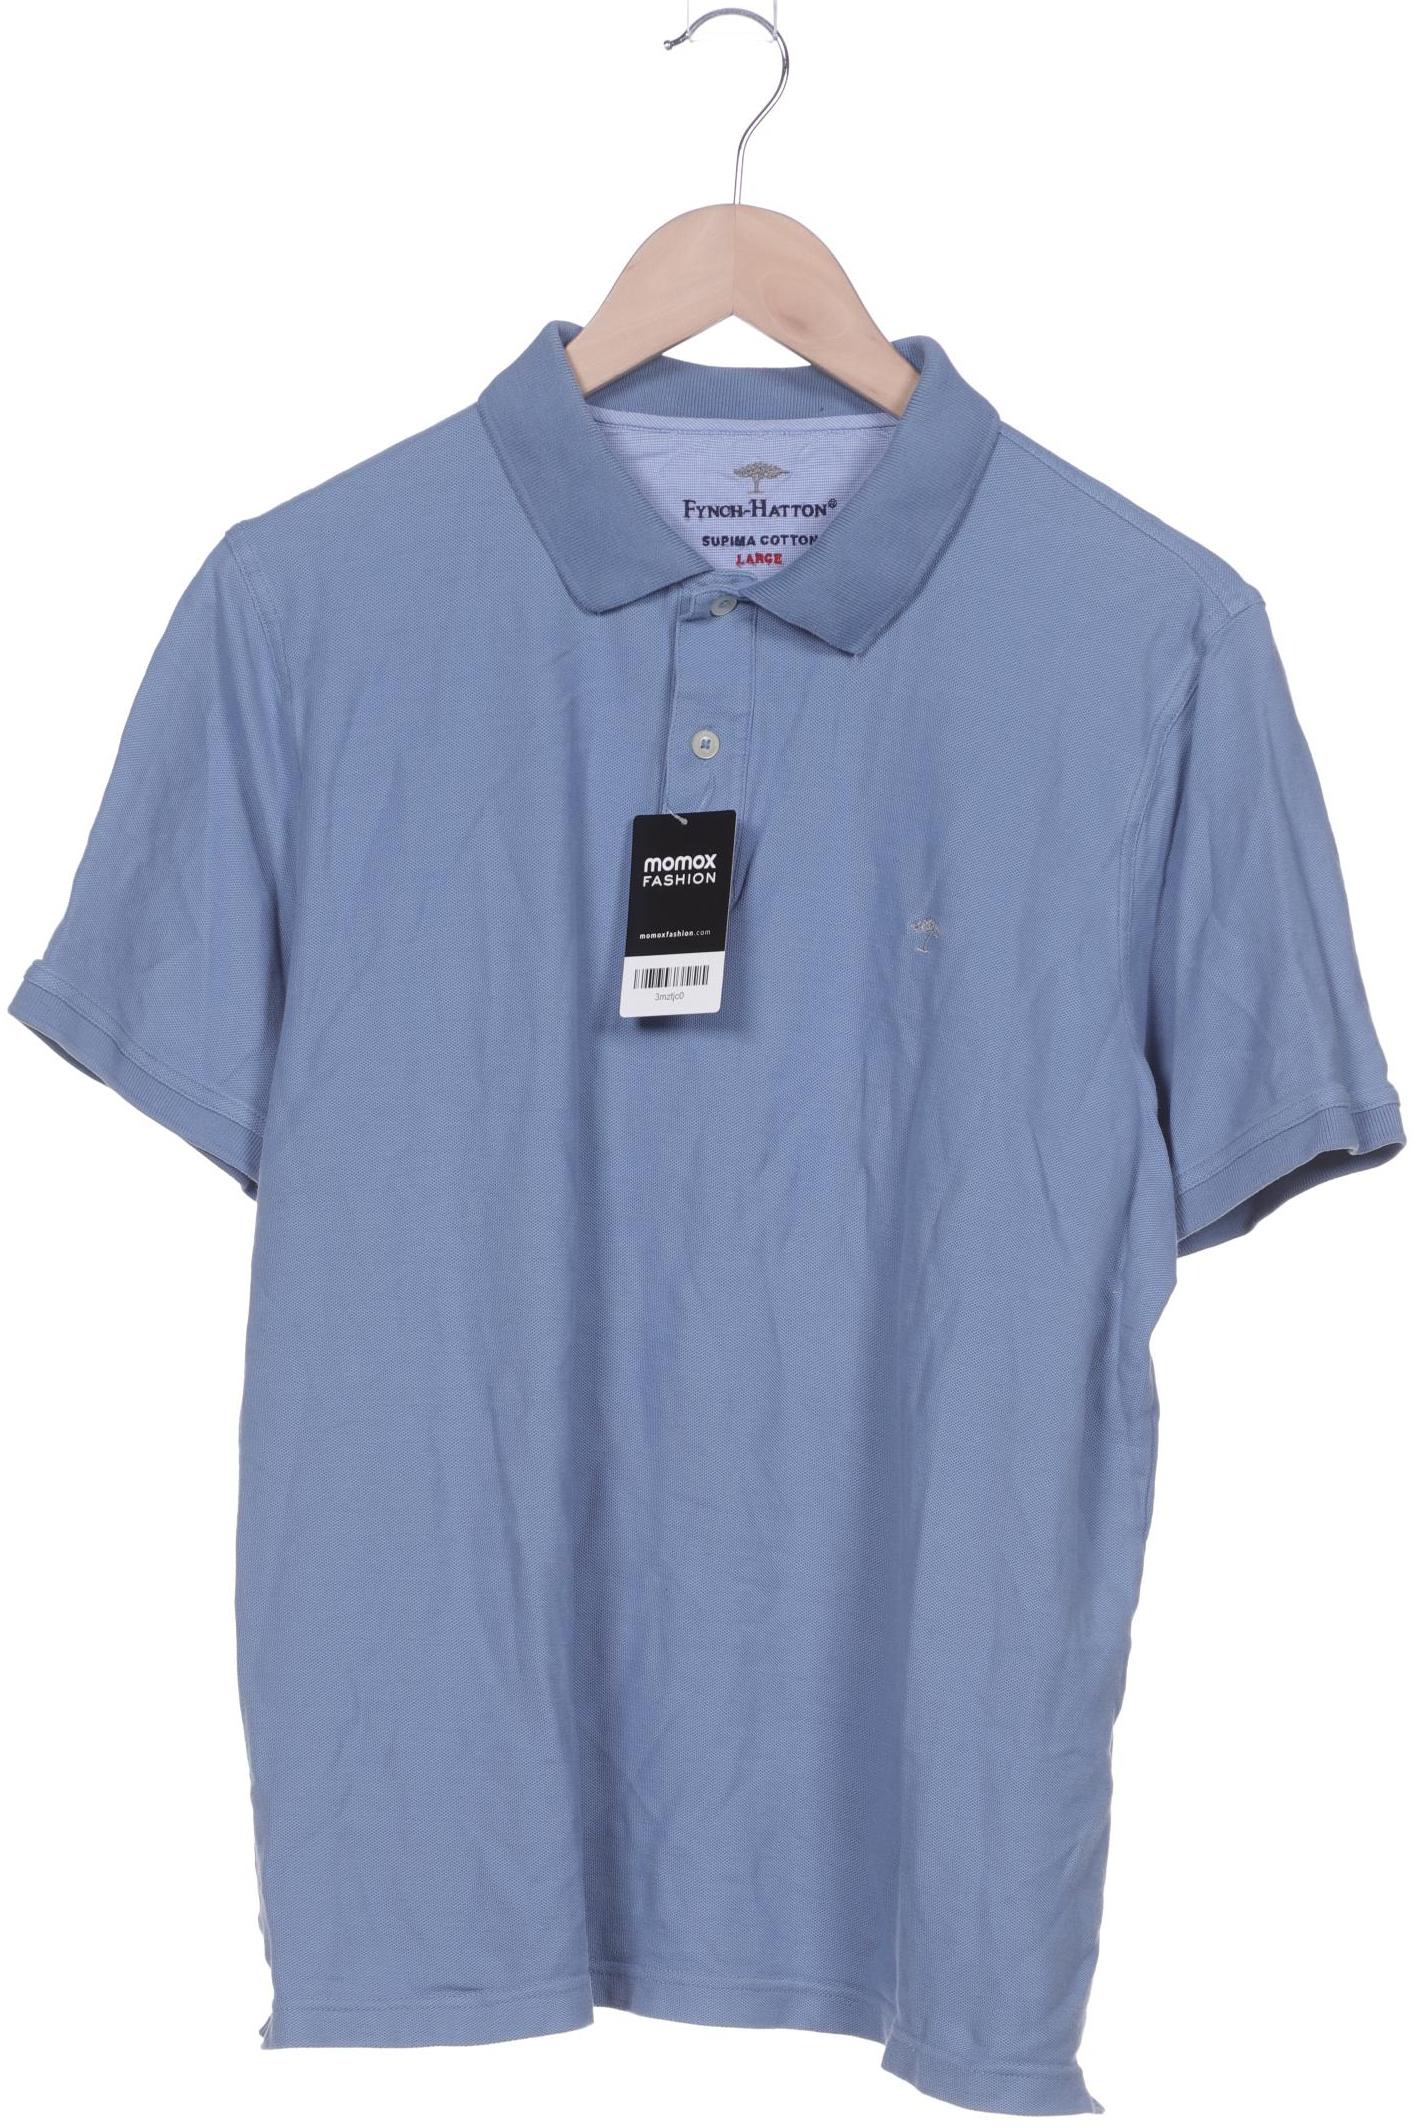 Fynch Hatton Herren Poloshirt, blau, Gr. 52 von Fynch Hatton